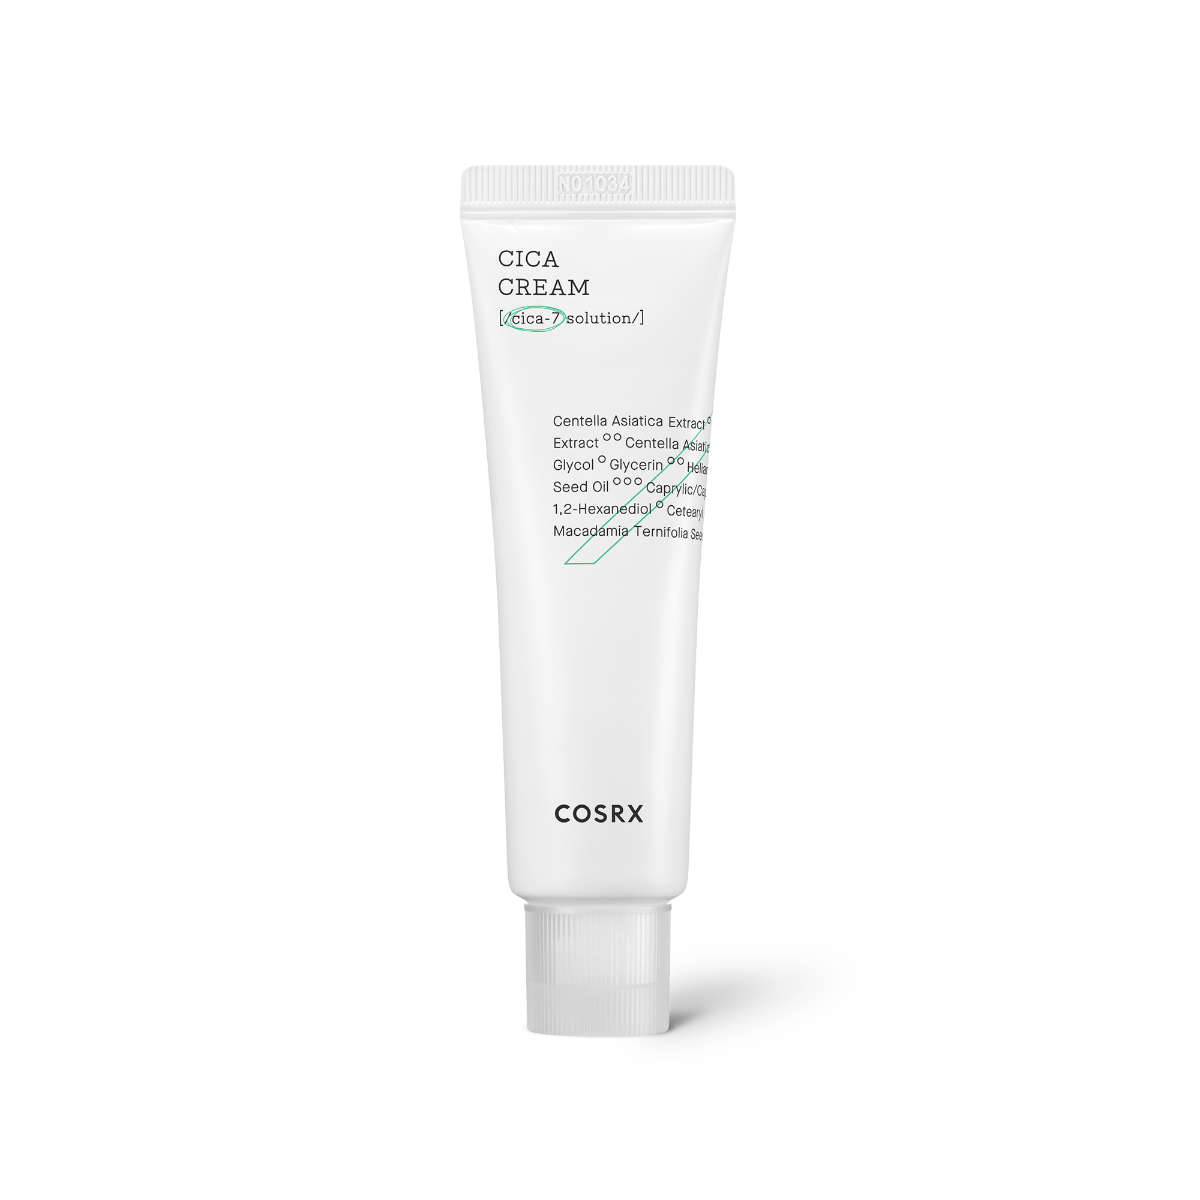 COSRX Pure Fit Cica Cream 50ml & Toner 150ml & Serum 30ml